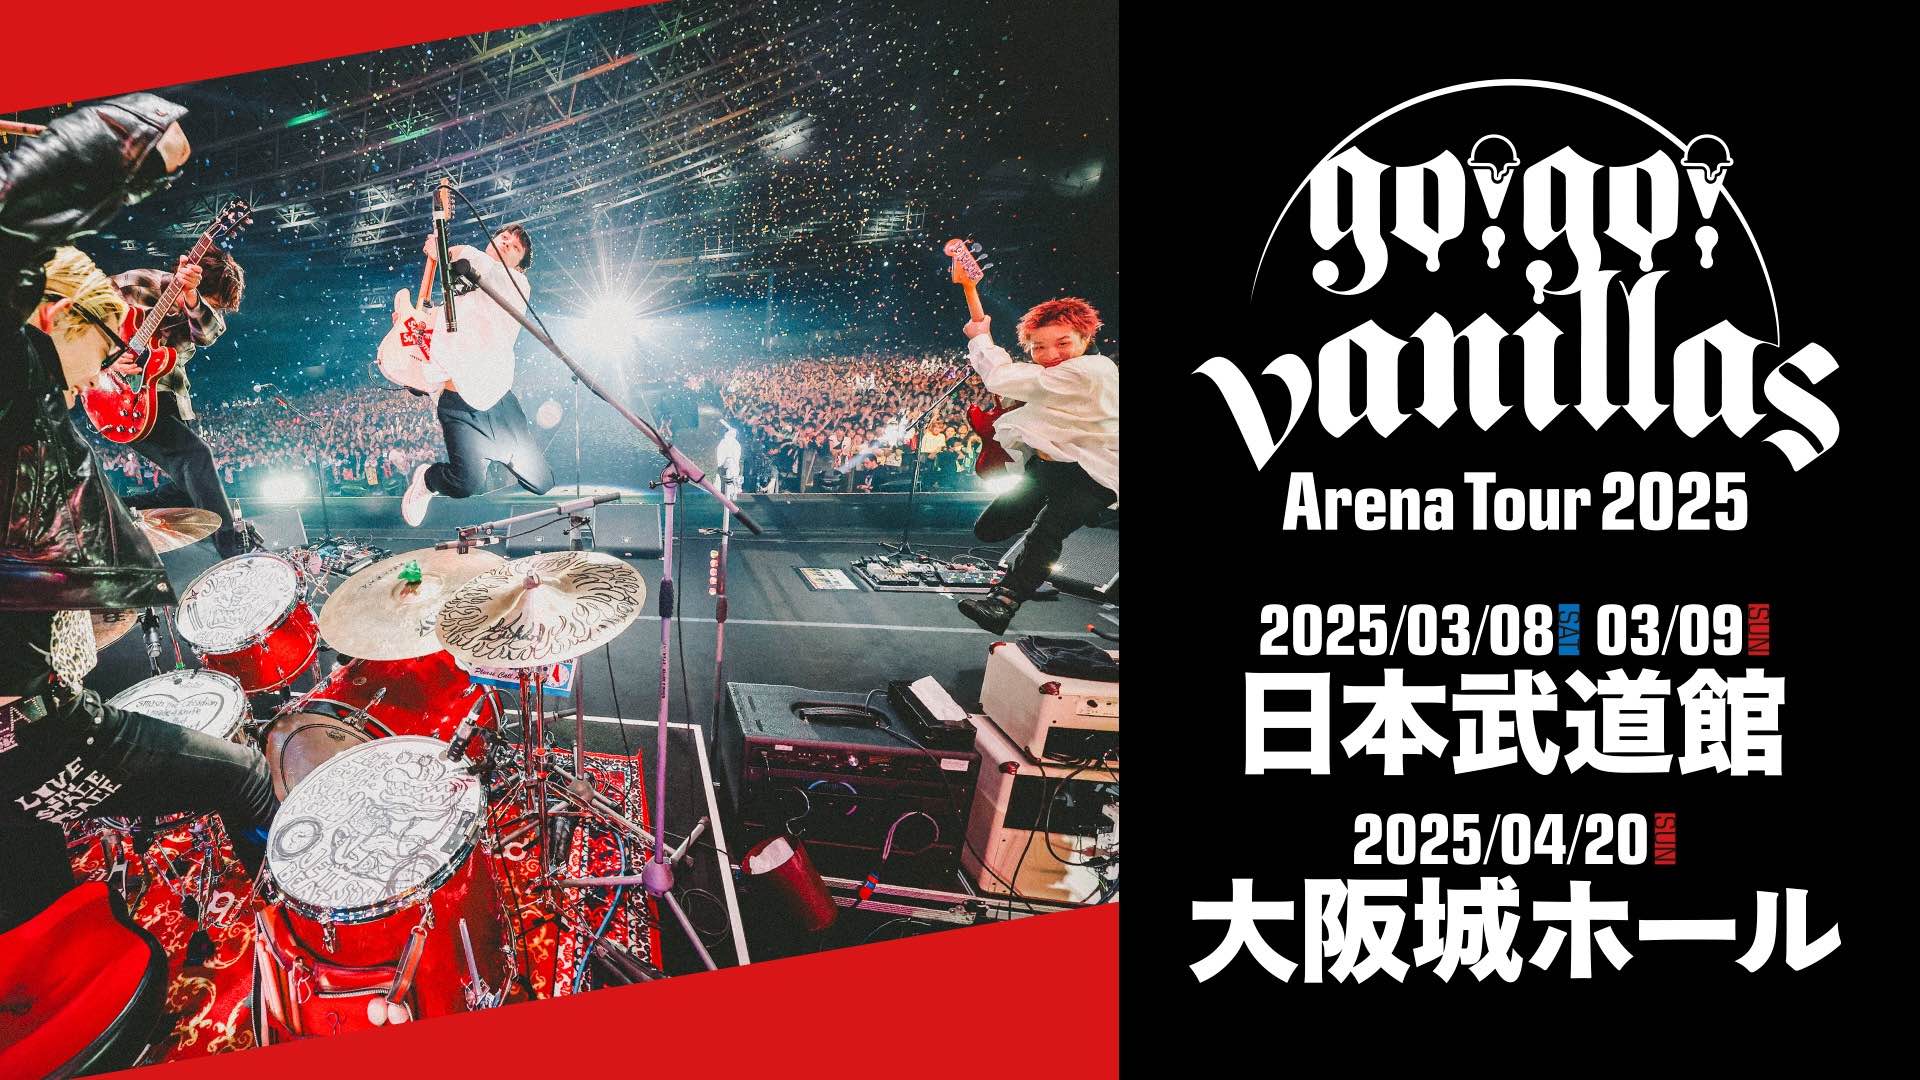 日本武道館<span class="live-title">「go!go!vanillas Arena Tour 2025」</span>